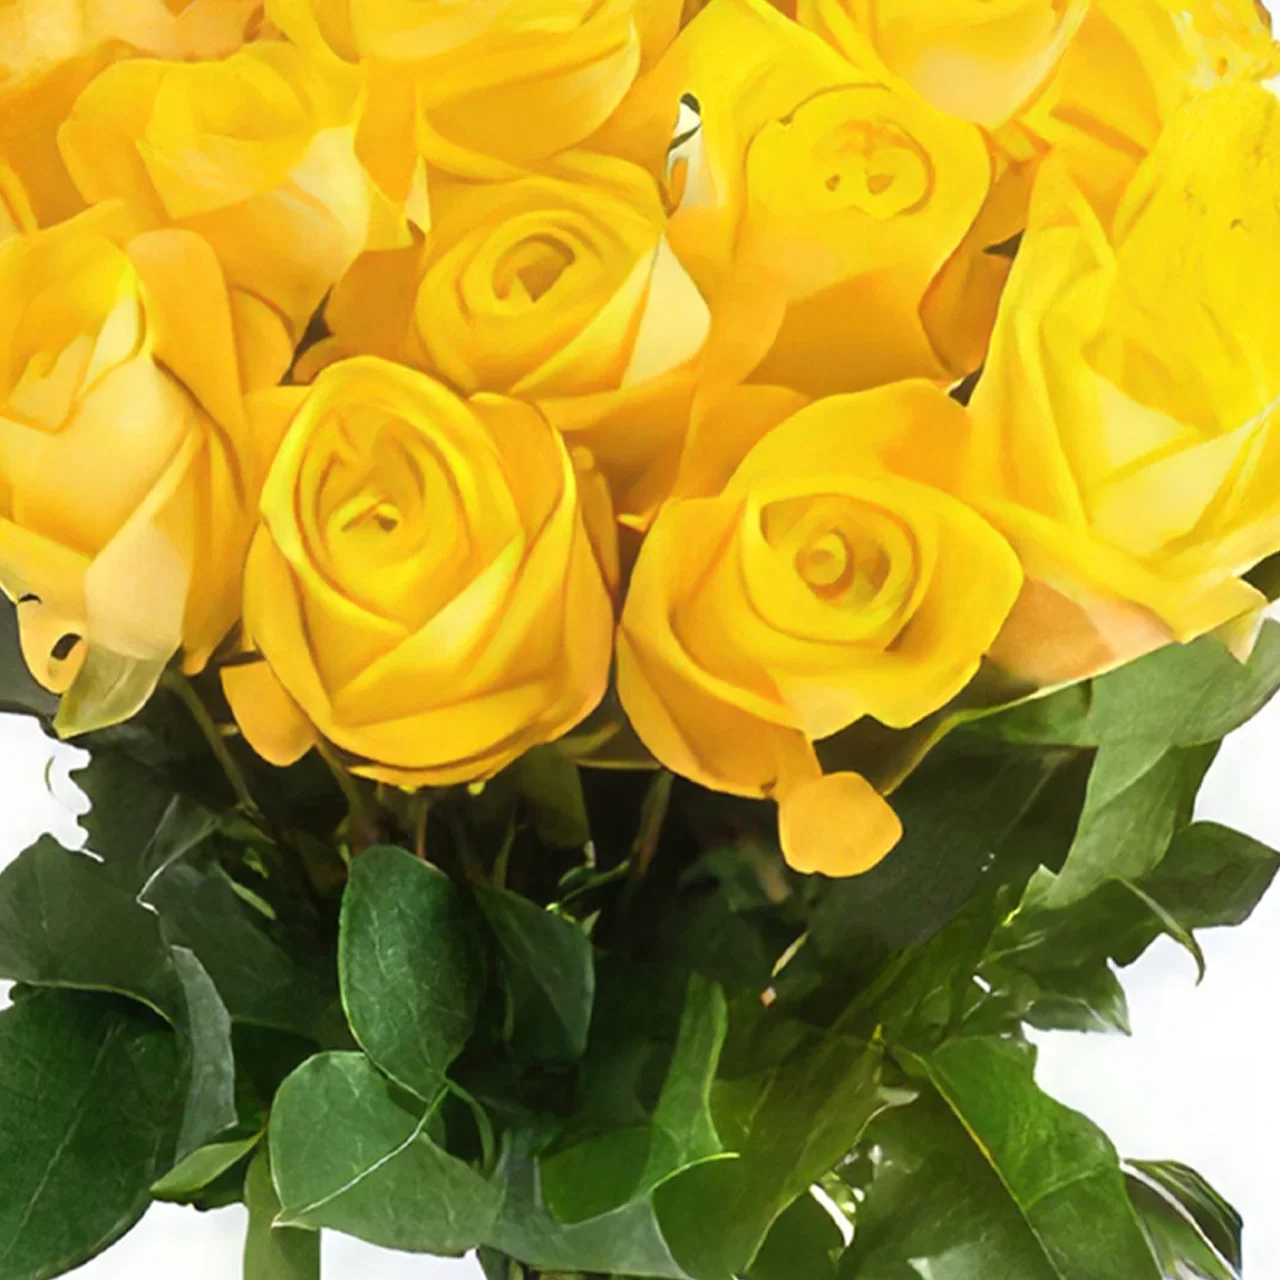 Rotterdam blomster- Buket gule roser Blomst buket/Arrangement